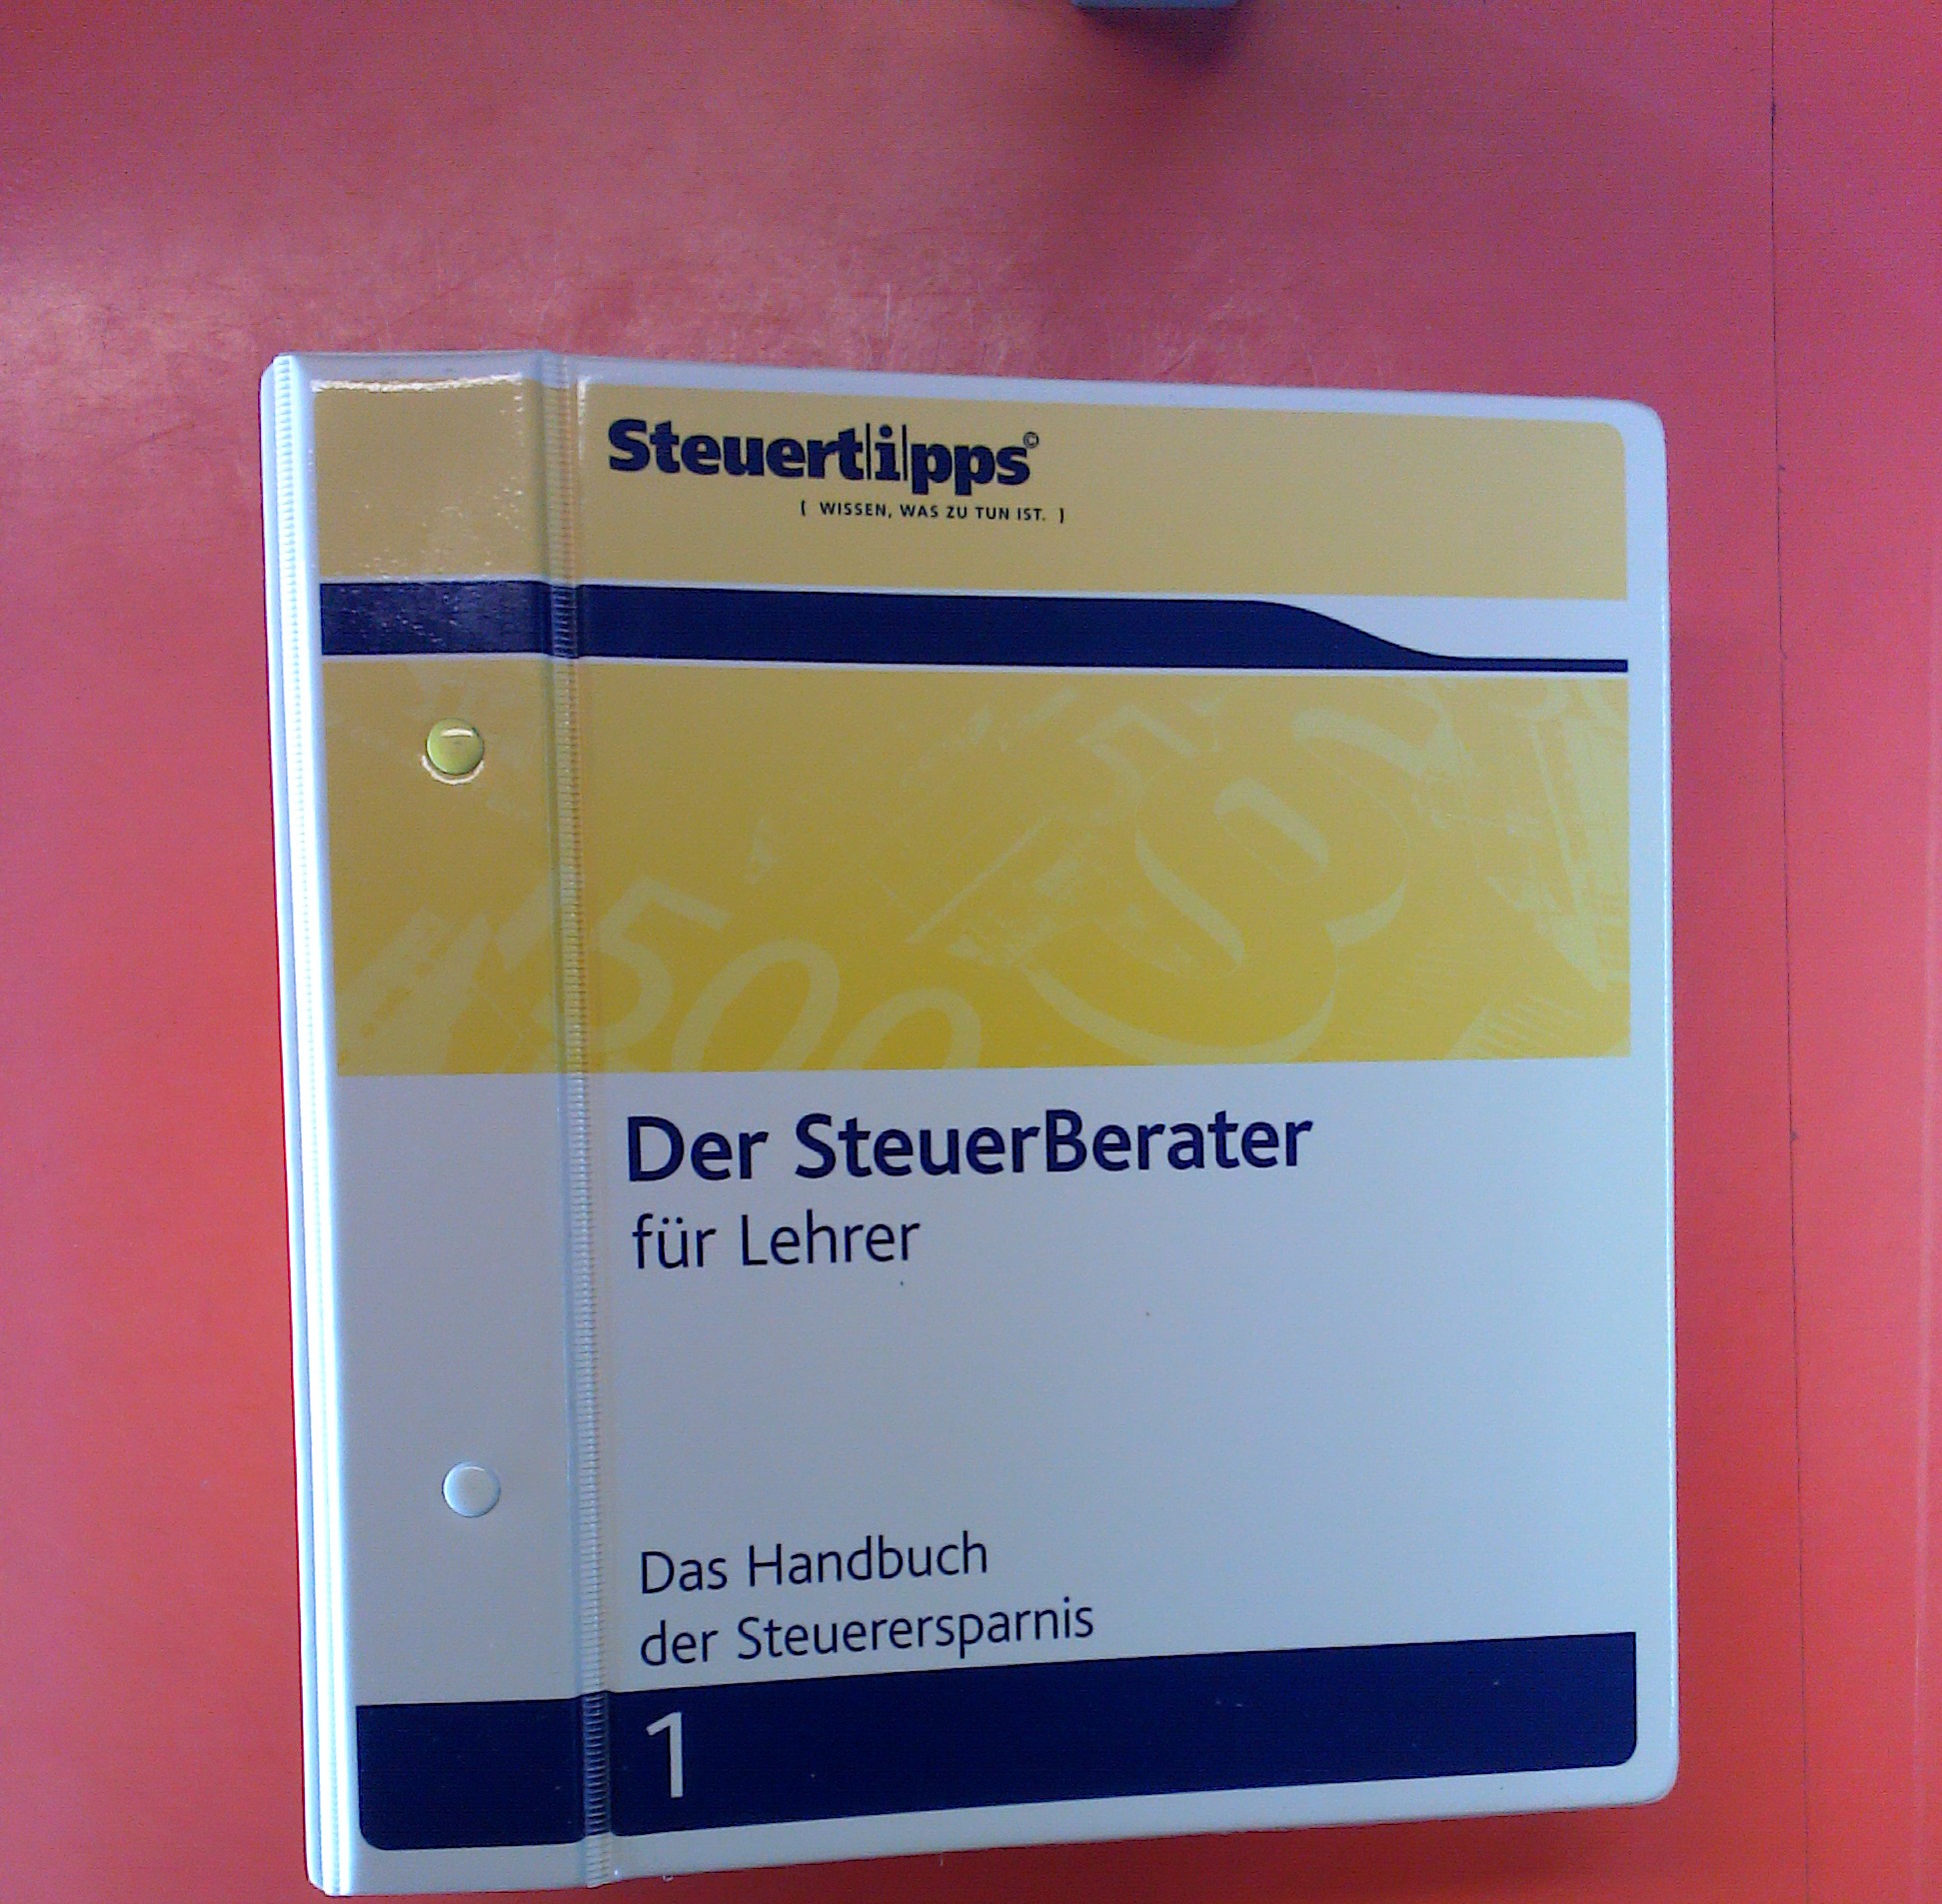 Steuertipps - Der SteuerBerater für Lehrer 1 (Handbuch der Steuerersparnis) - Bernd Christian Grimm / Dieter Weber